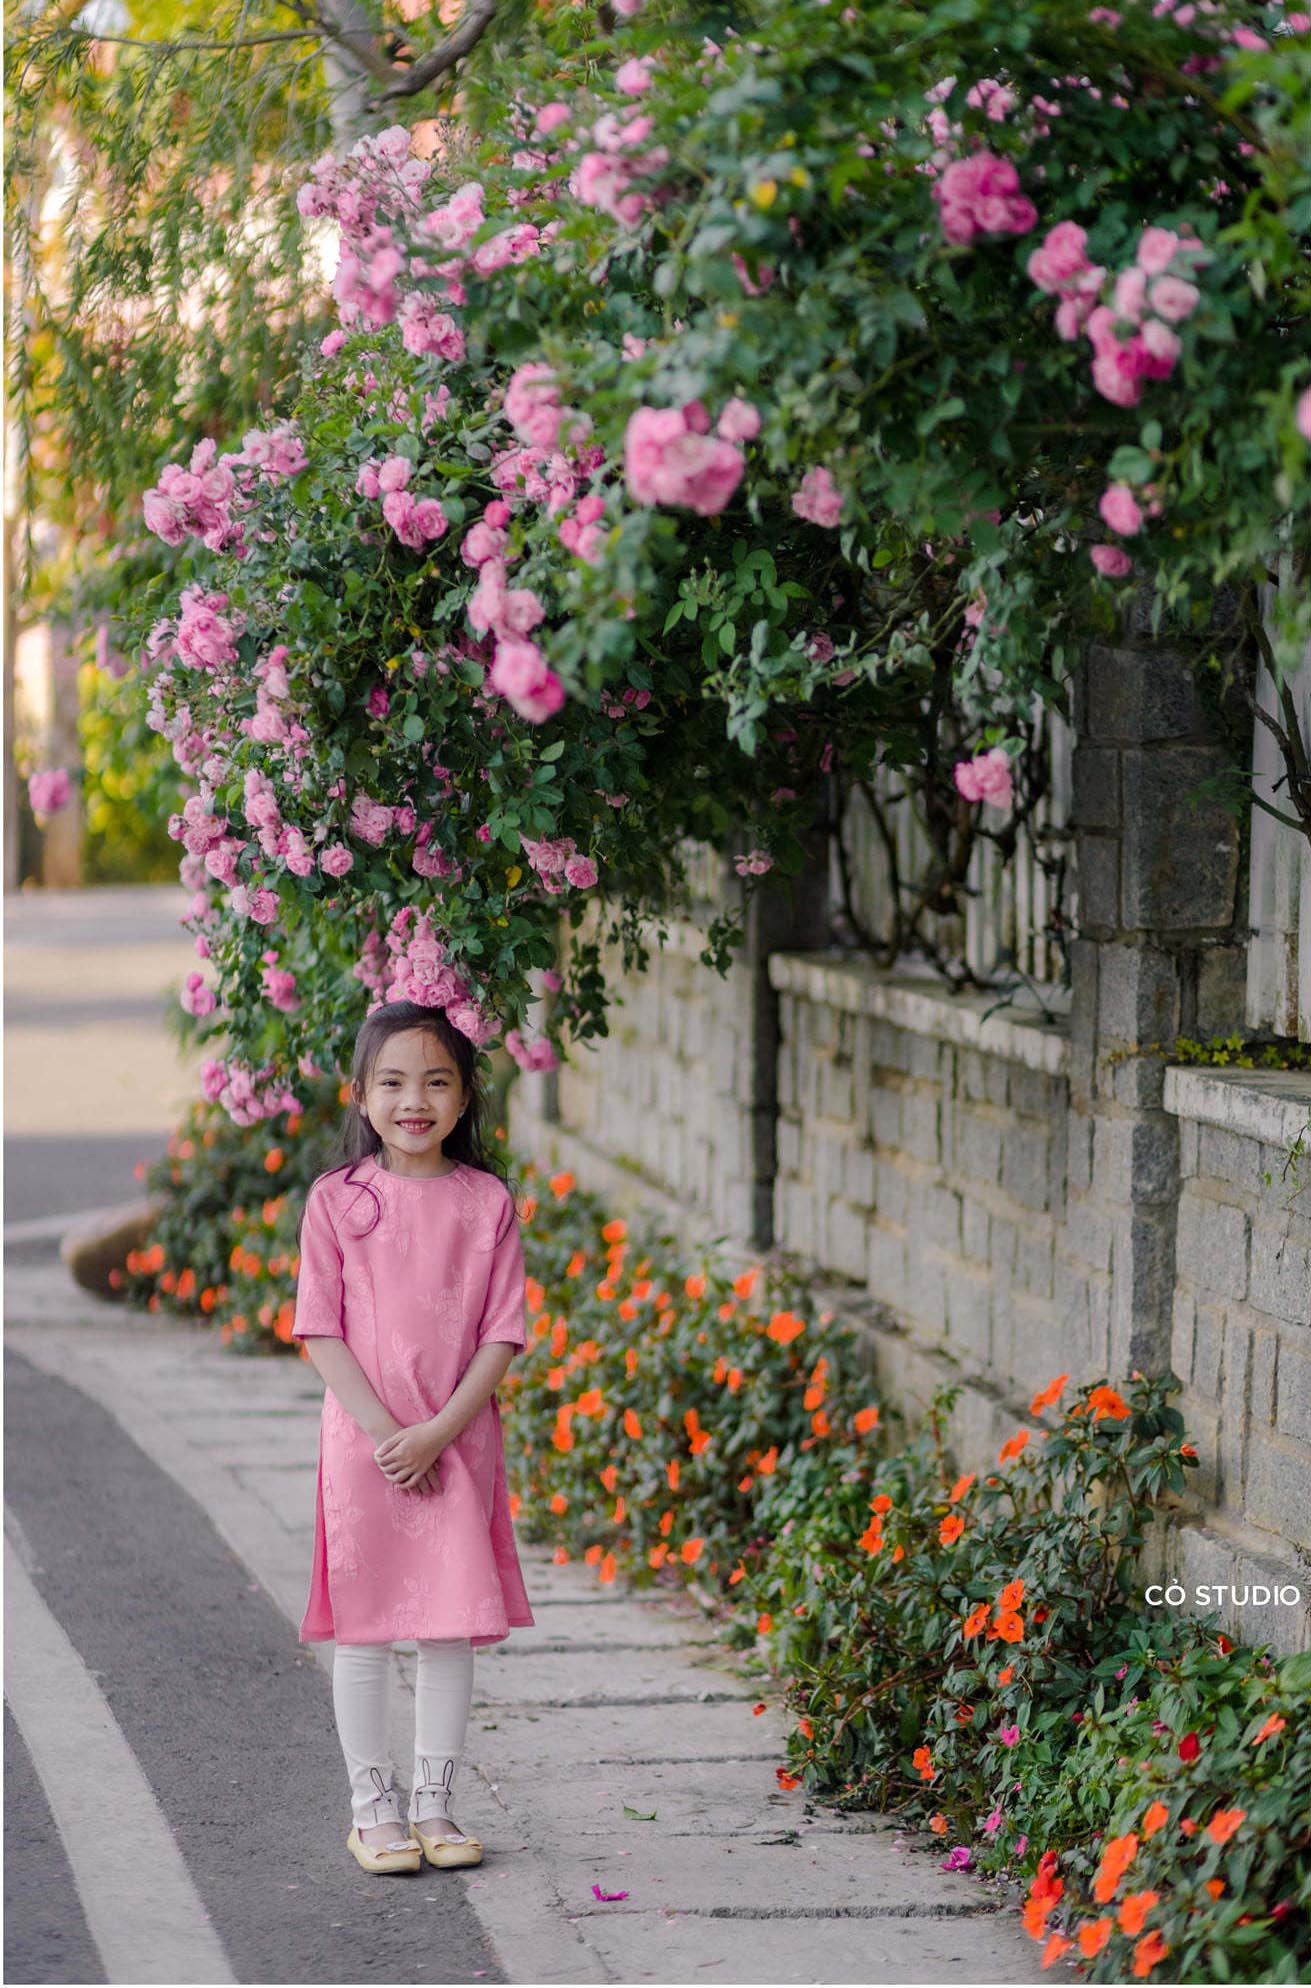 Ngẩn ngơ trước vẻ đẹp của hàng rào hoa hồng Đà Lạt - 'Nàng thơ' mới của thành phố mộng mơ 6